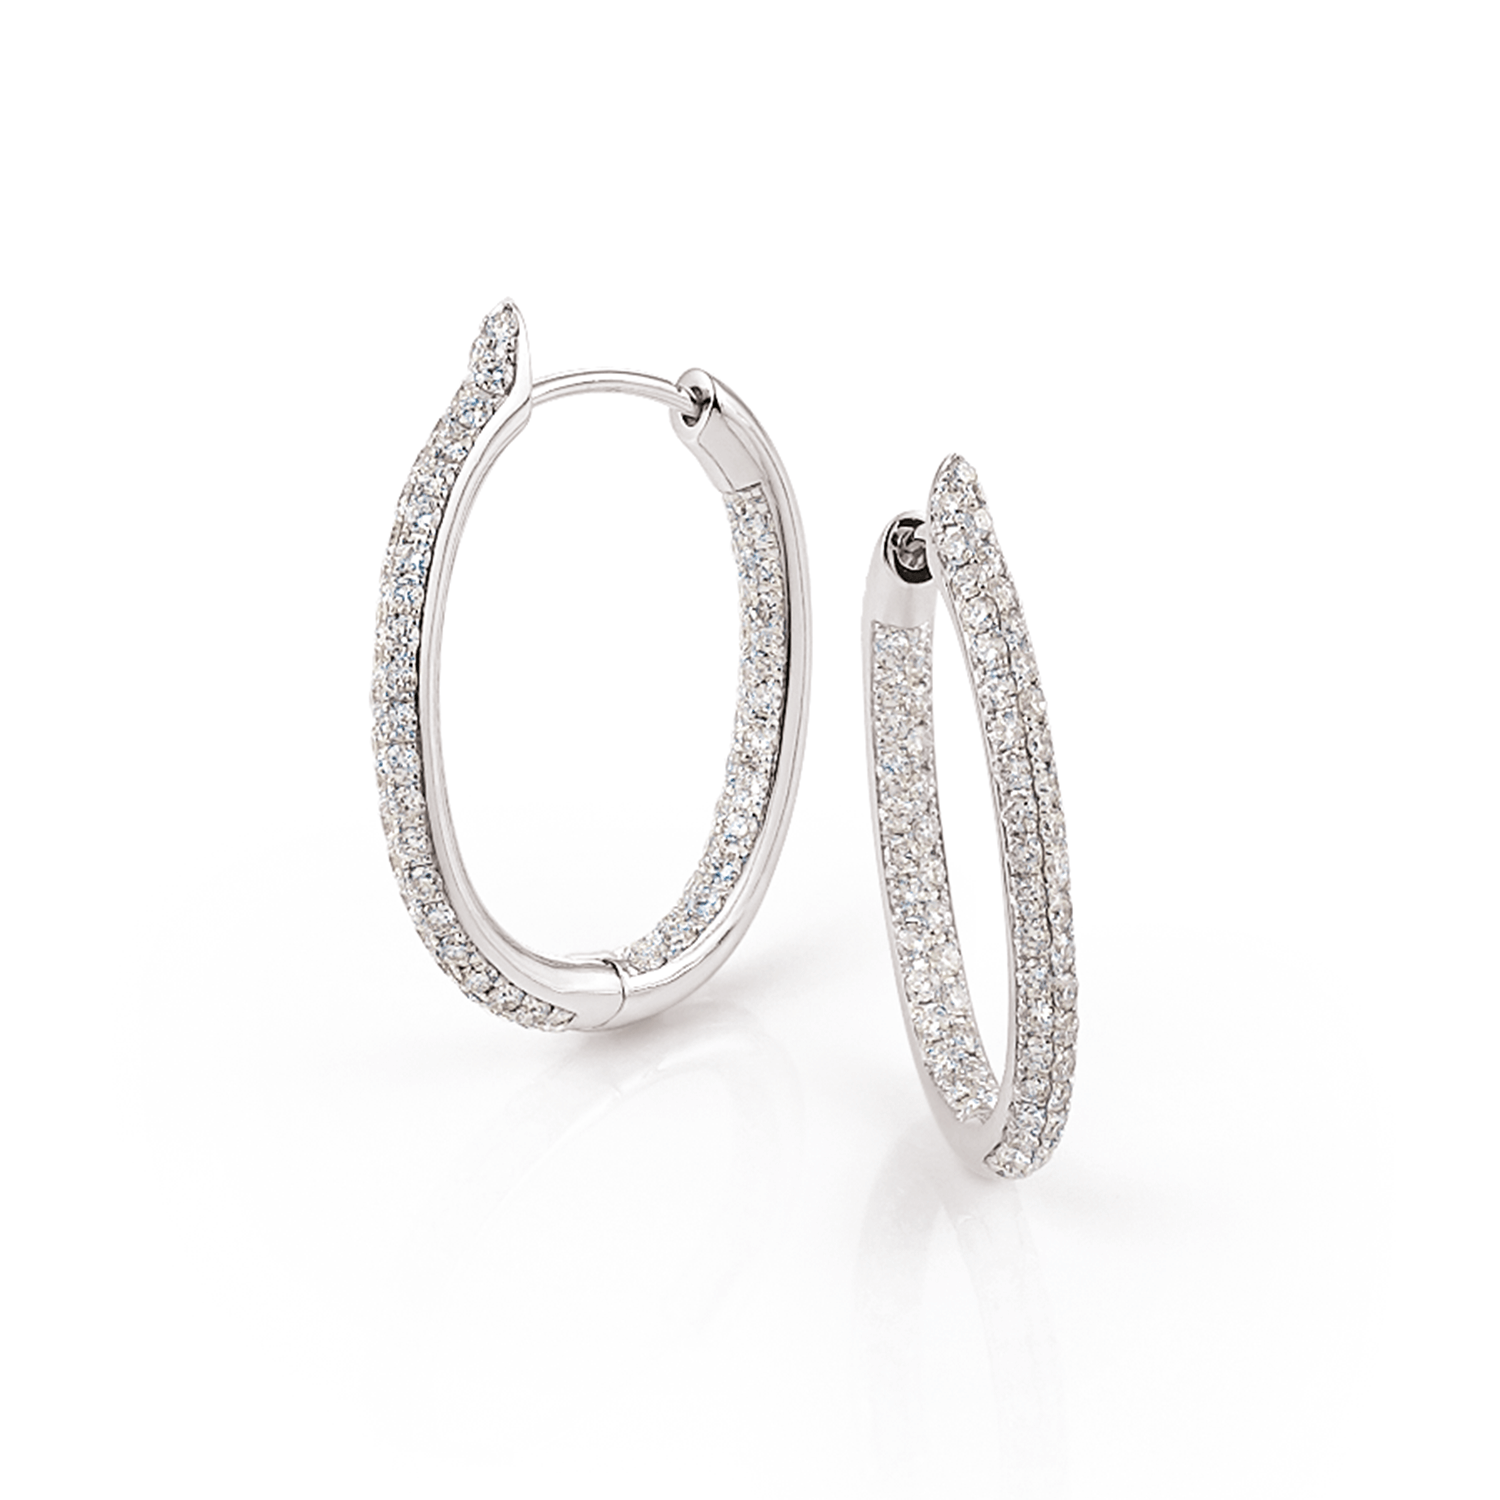 Al Coro Amori Earrings in 18k White Gold with Diamonds - Orsini Jewellers NZ